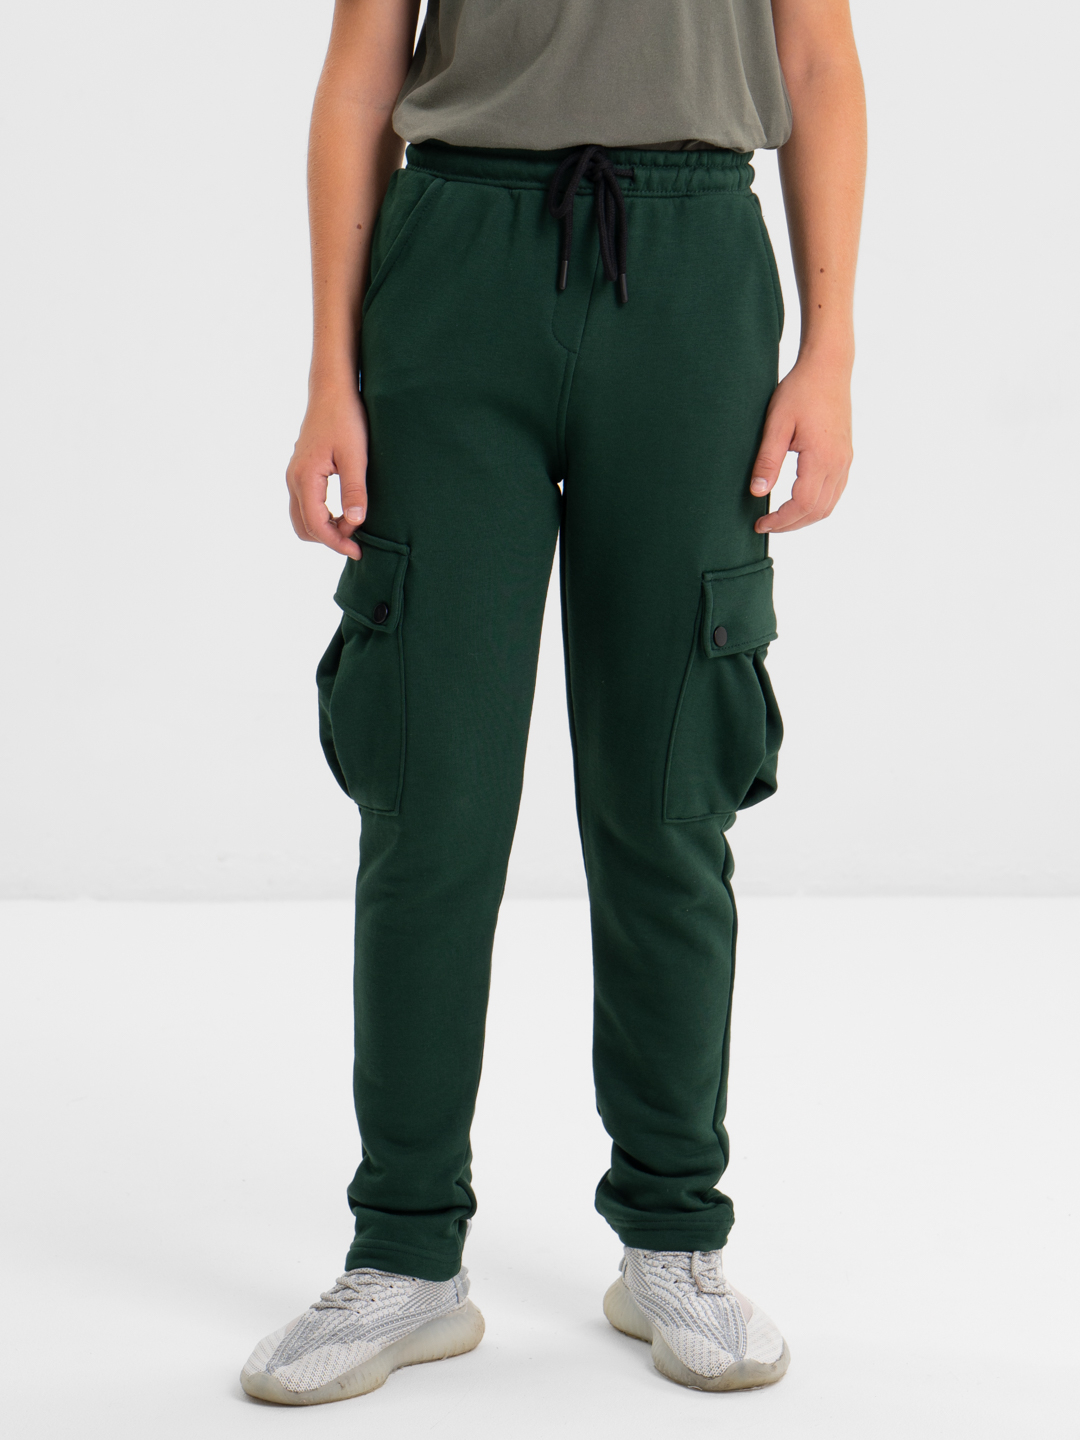 Спортивные штаны, брюки для мальчика подростка без начеса с карманамикупить по цене 2899 ₽ в интернет-магазине KazanExpress